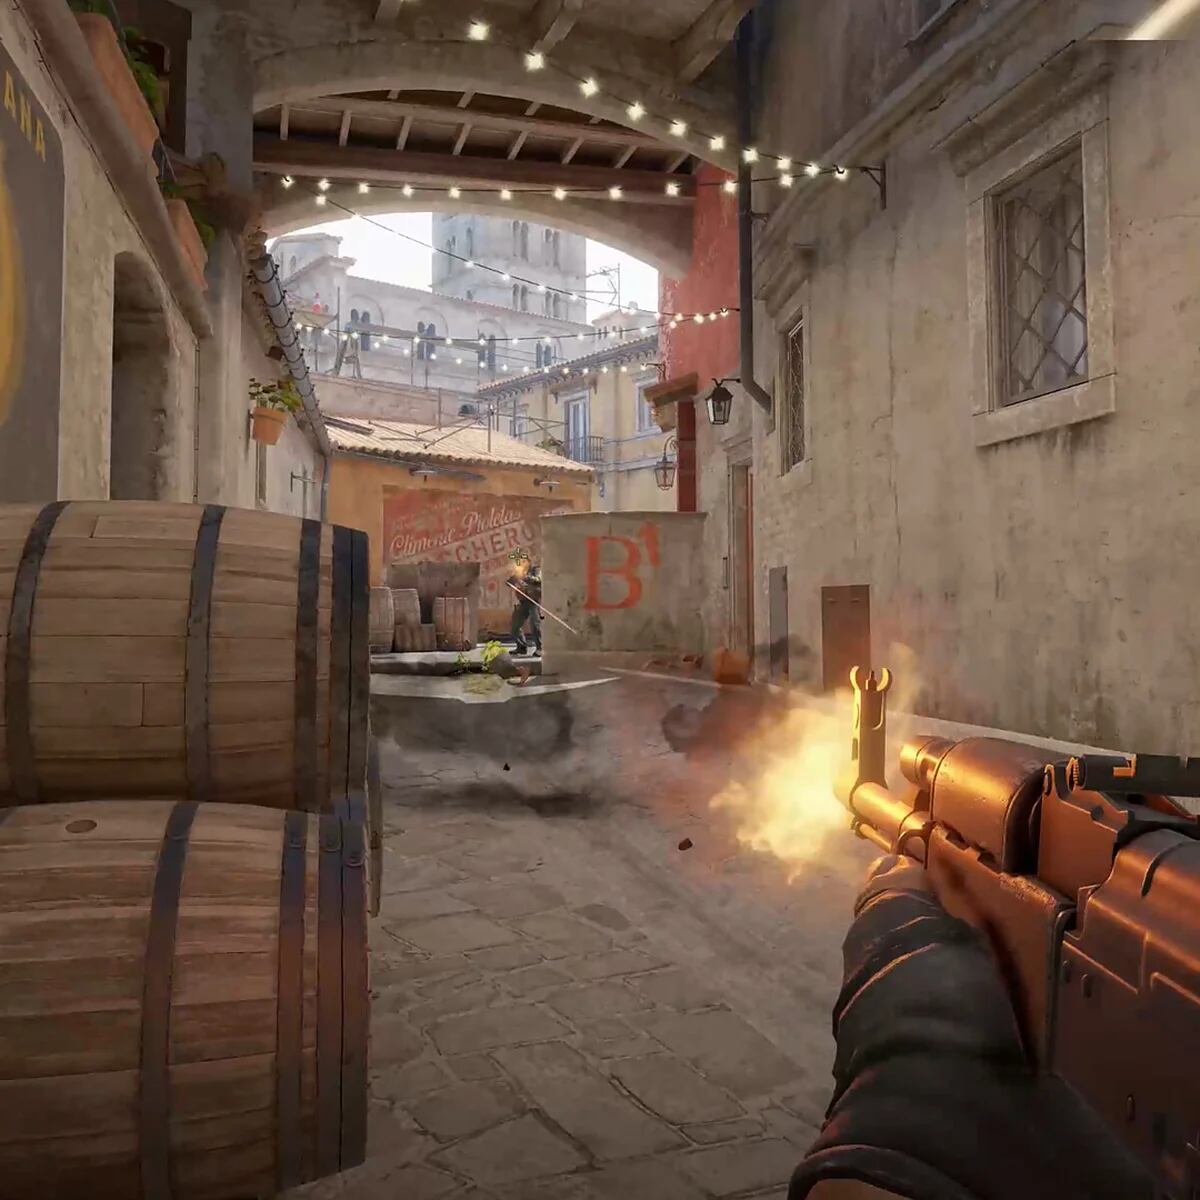 Counter-Strike 2 es una realidad: Valve publica videos con gameplay y  anuncia prueba limitada desde hoy